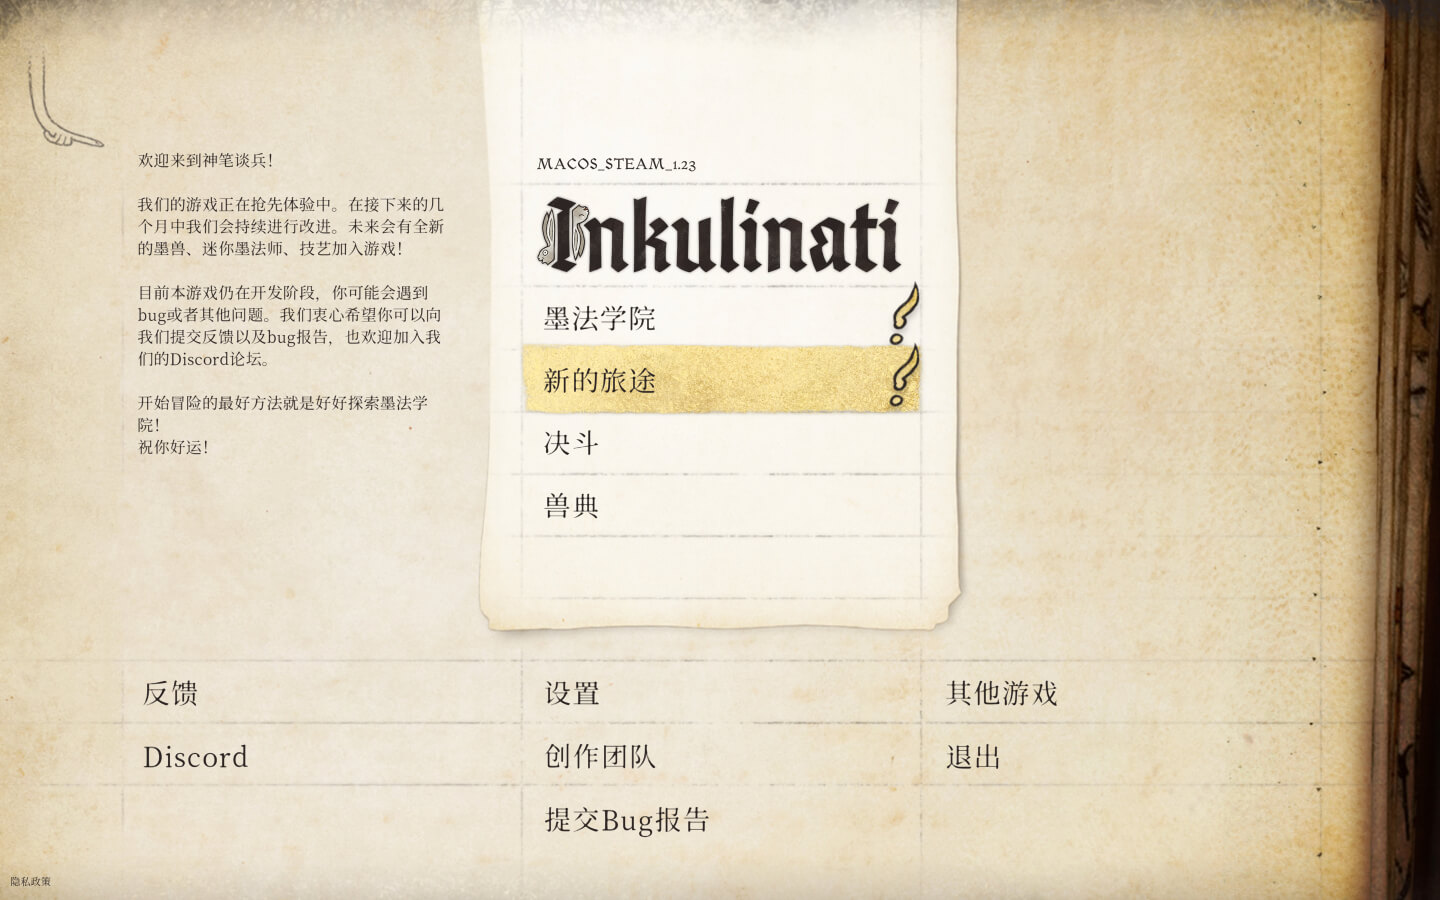 神笔谈兵 for Mac v1.23 Inkulinati 中文原生版下载-您赛